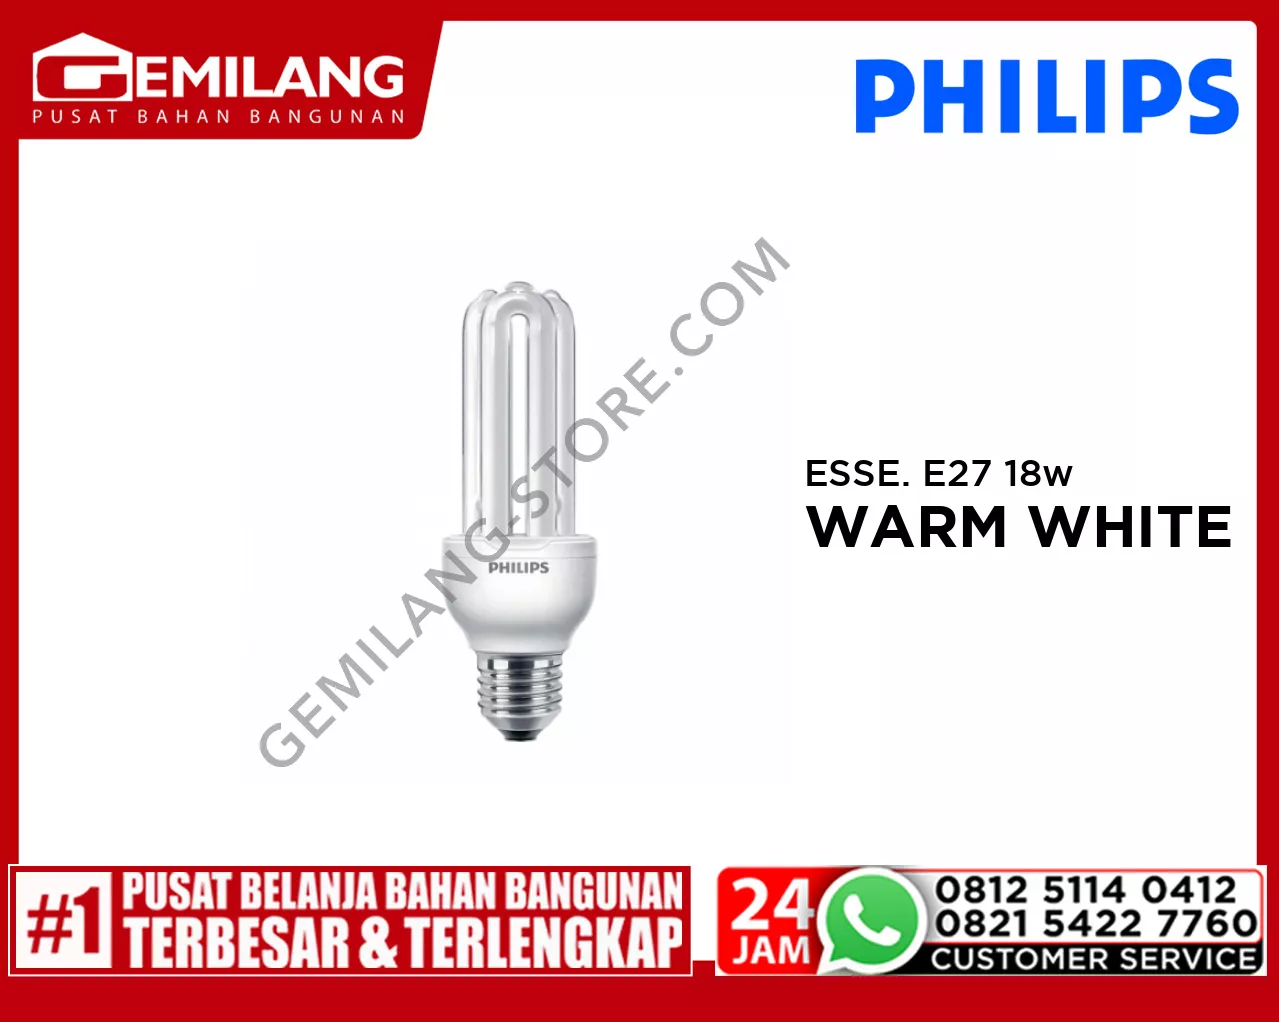 PHILIPS ESSENTIAL E27 WARM WHITE 18w